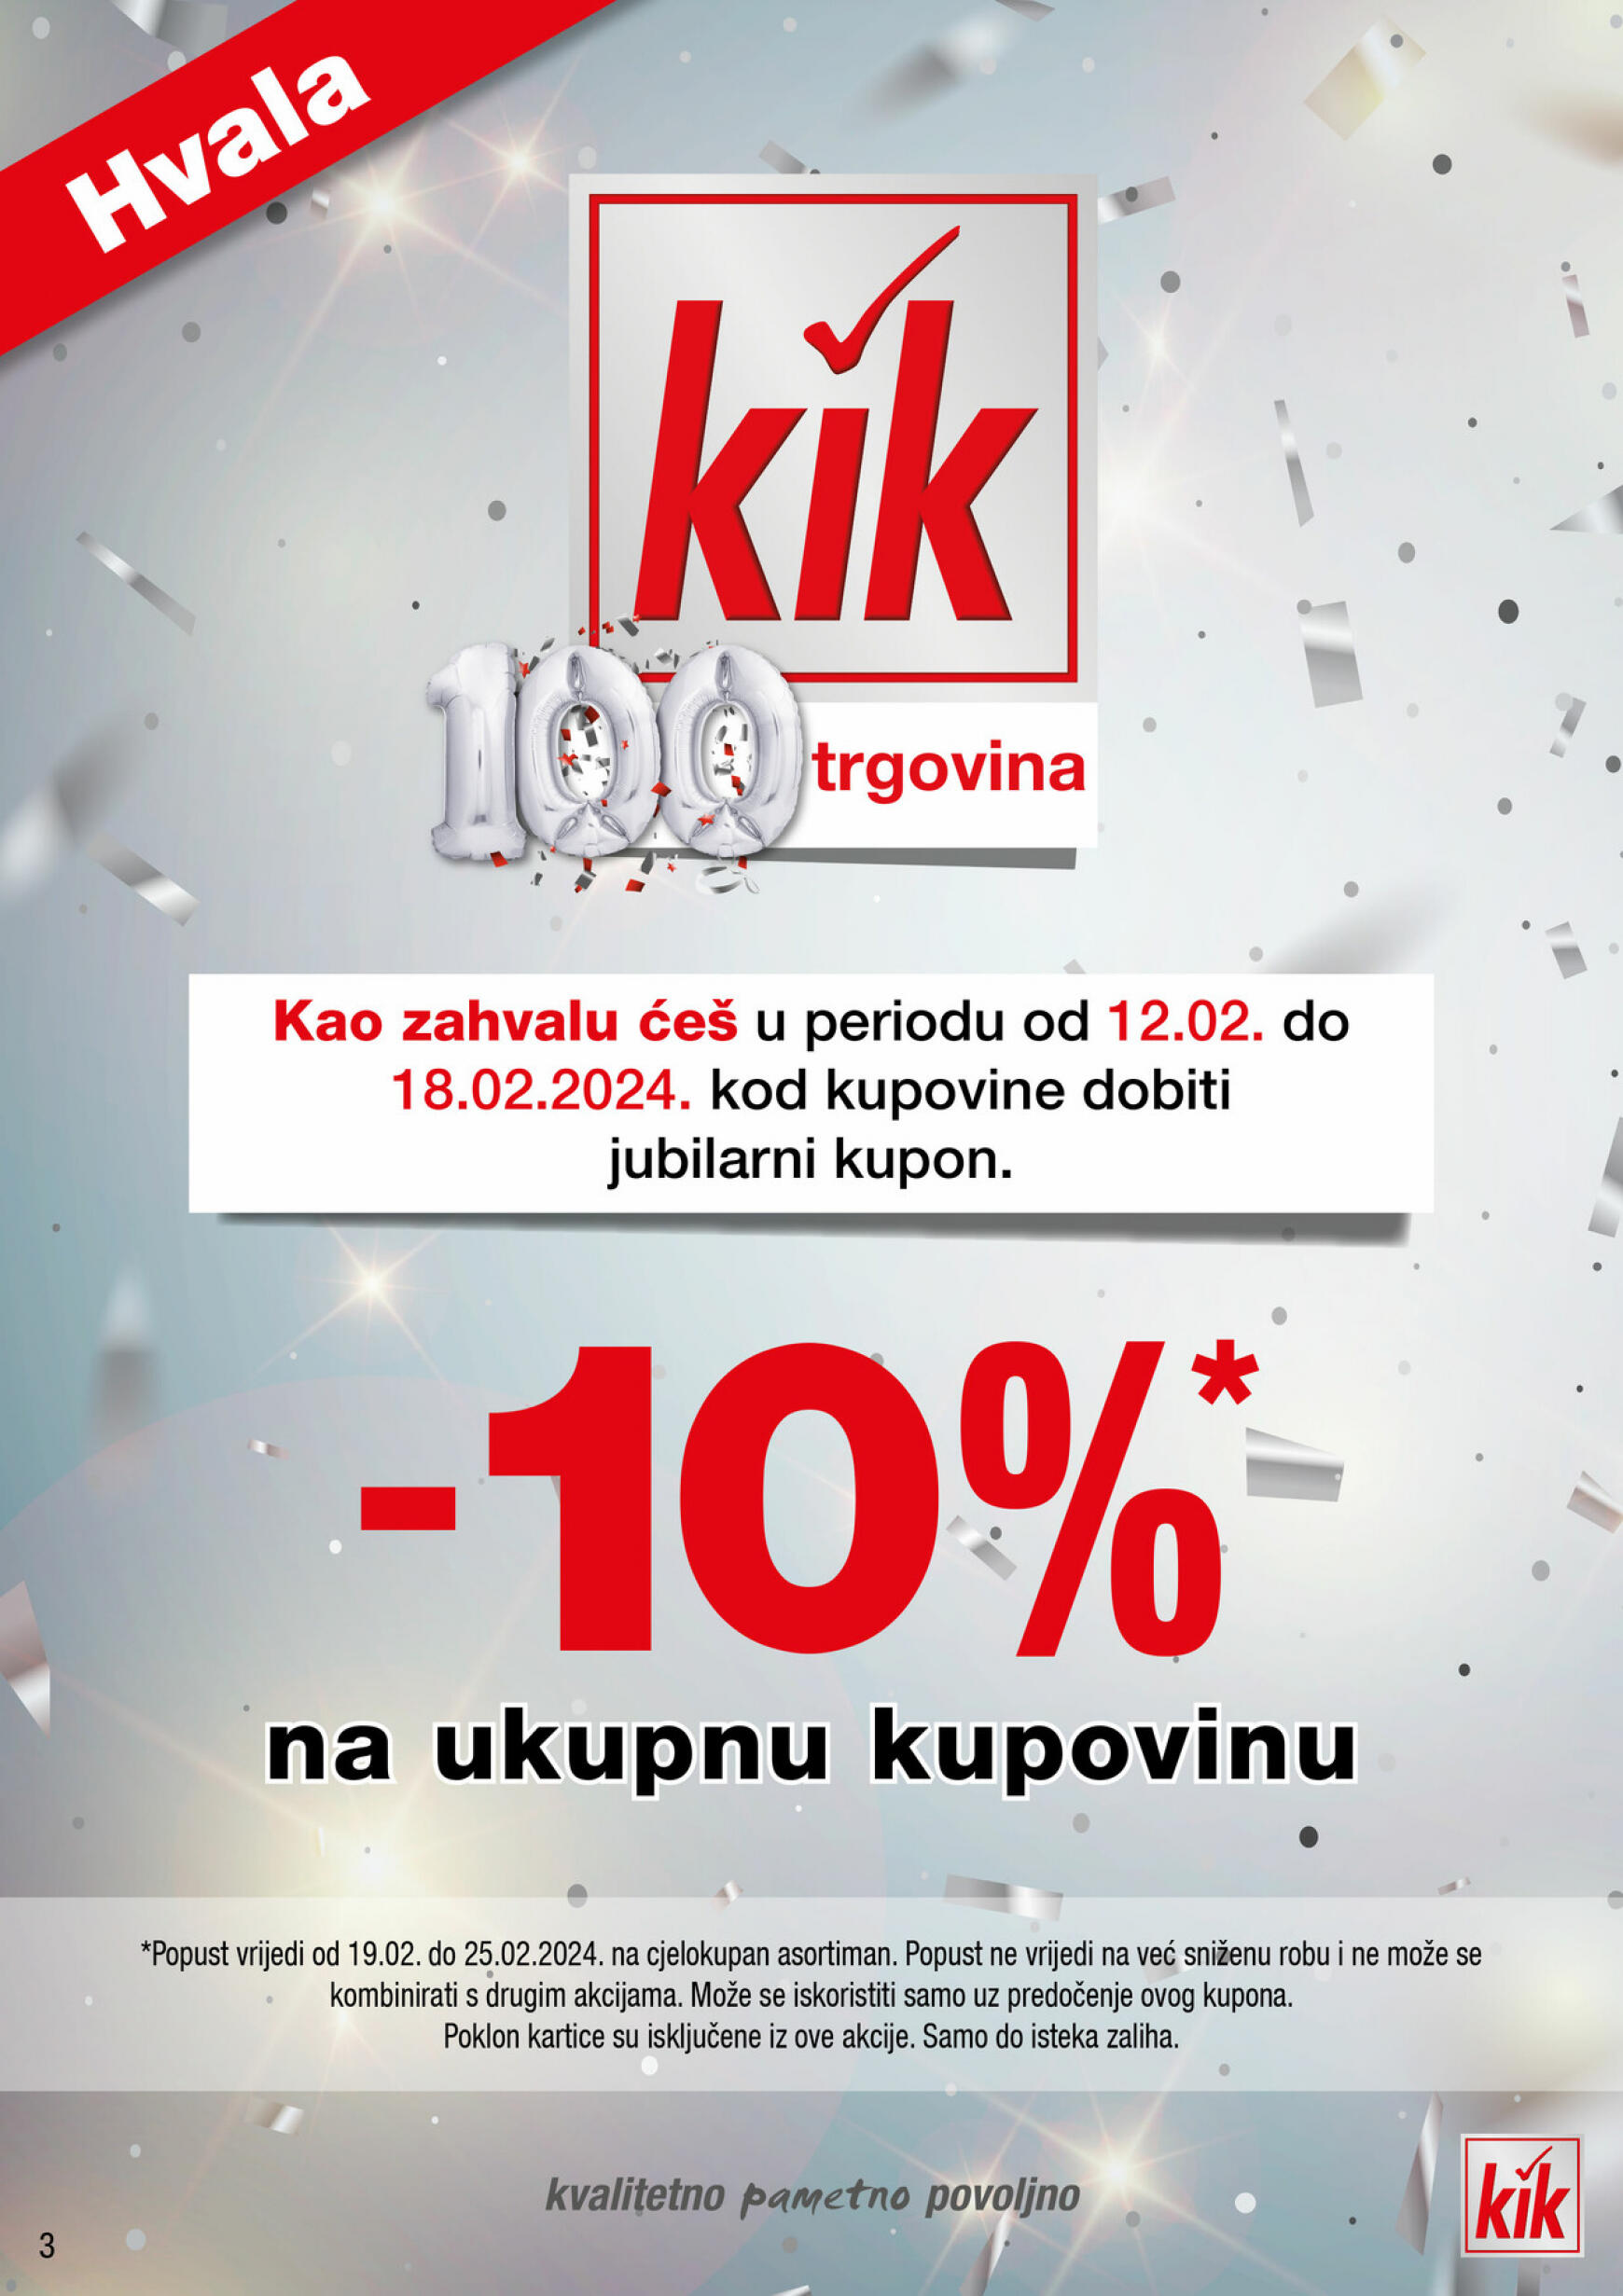 kik - KiK vrijedi od 05.02.2024 - page: 3